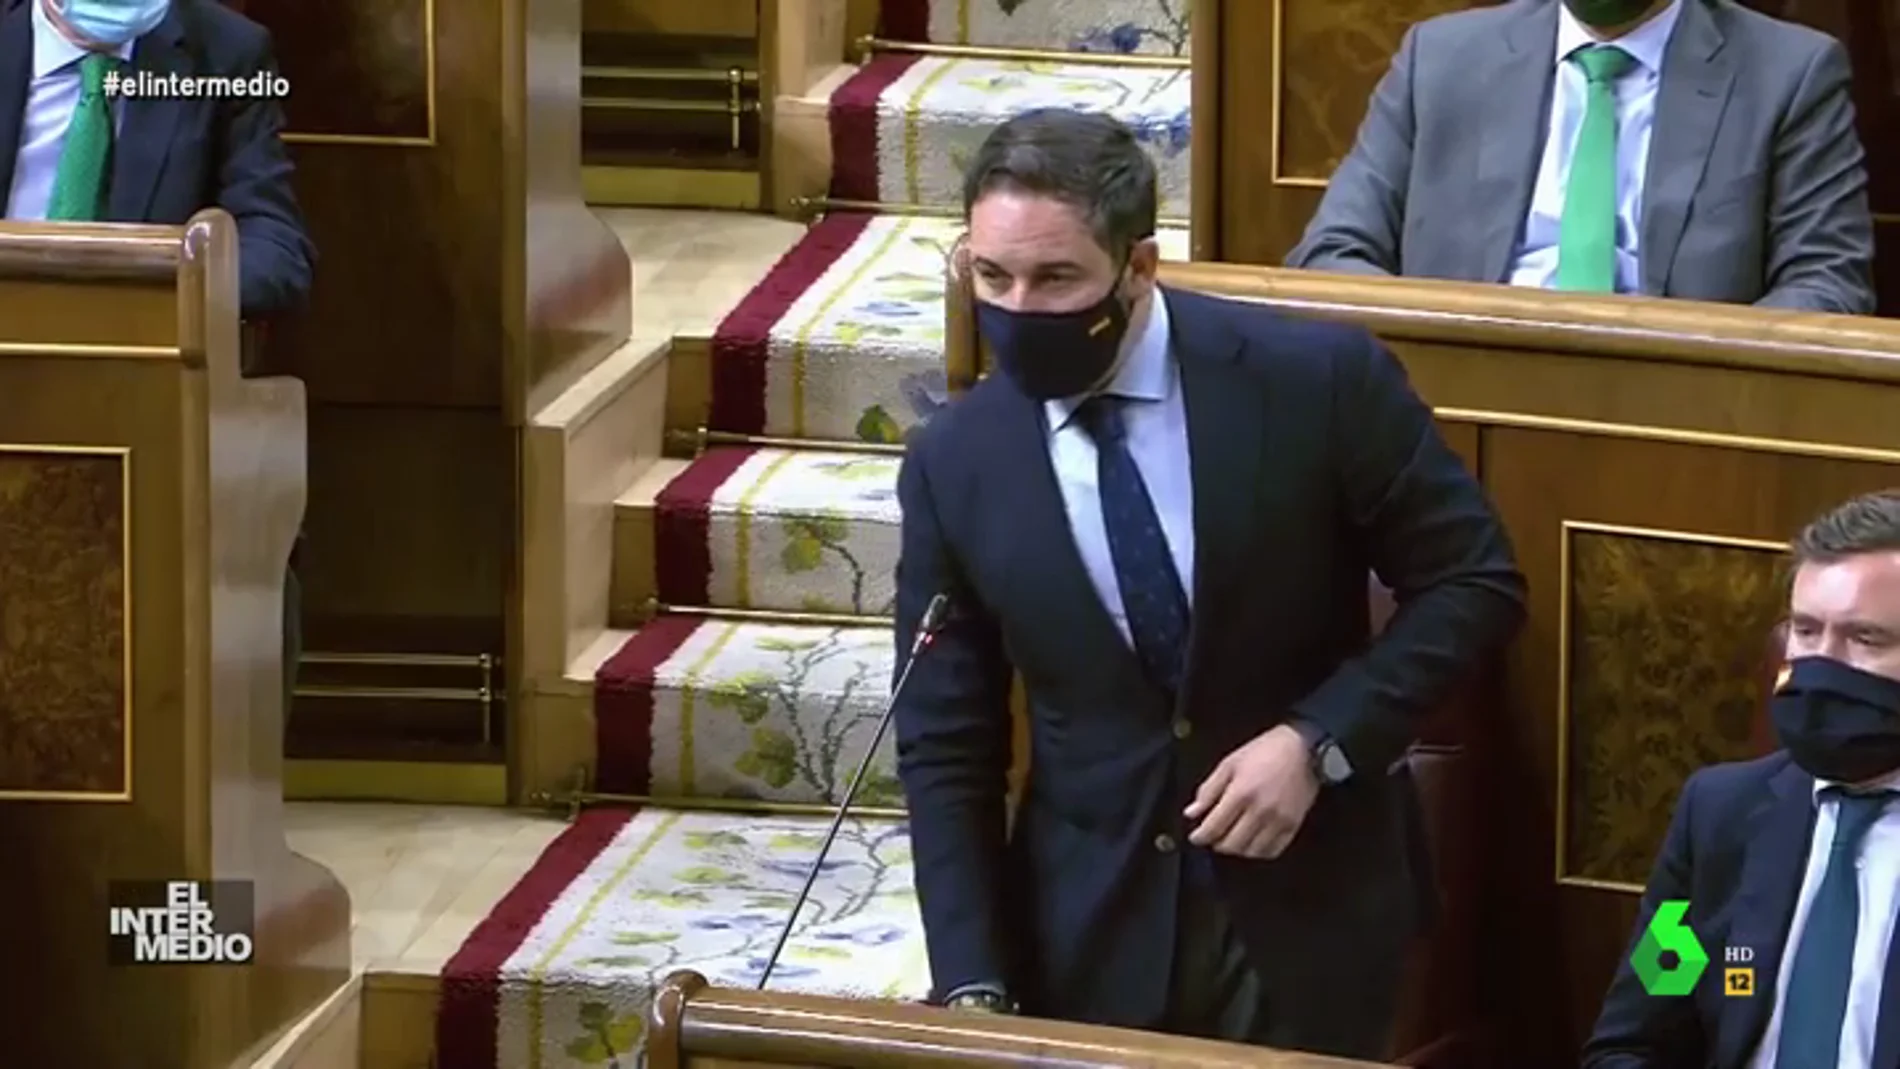 Vídeos manipulados - Santiago Abascal confiesa en pleno Congreso su verdadero acento: "Yo no hablo español"